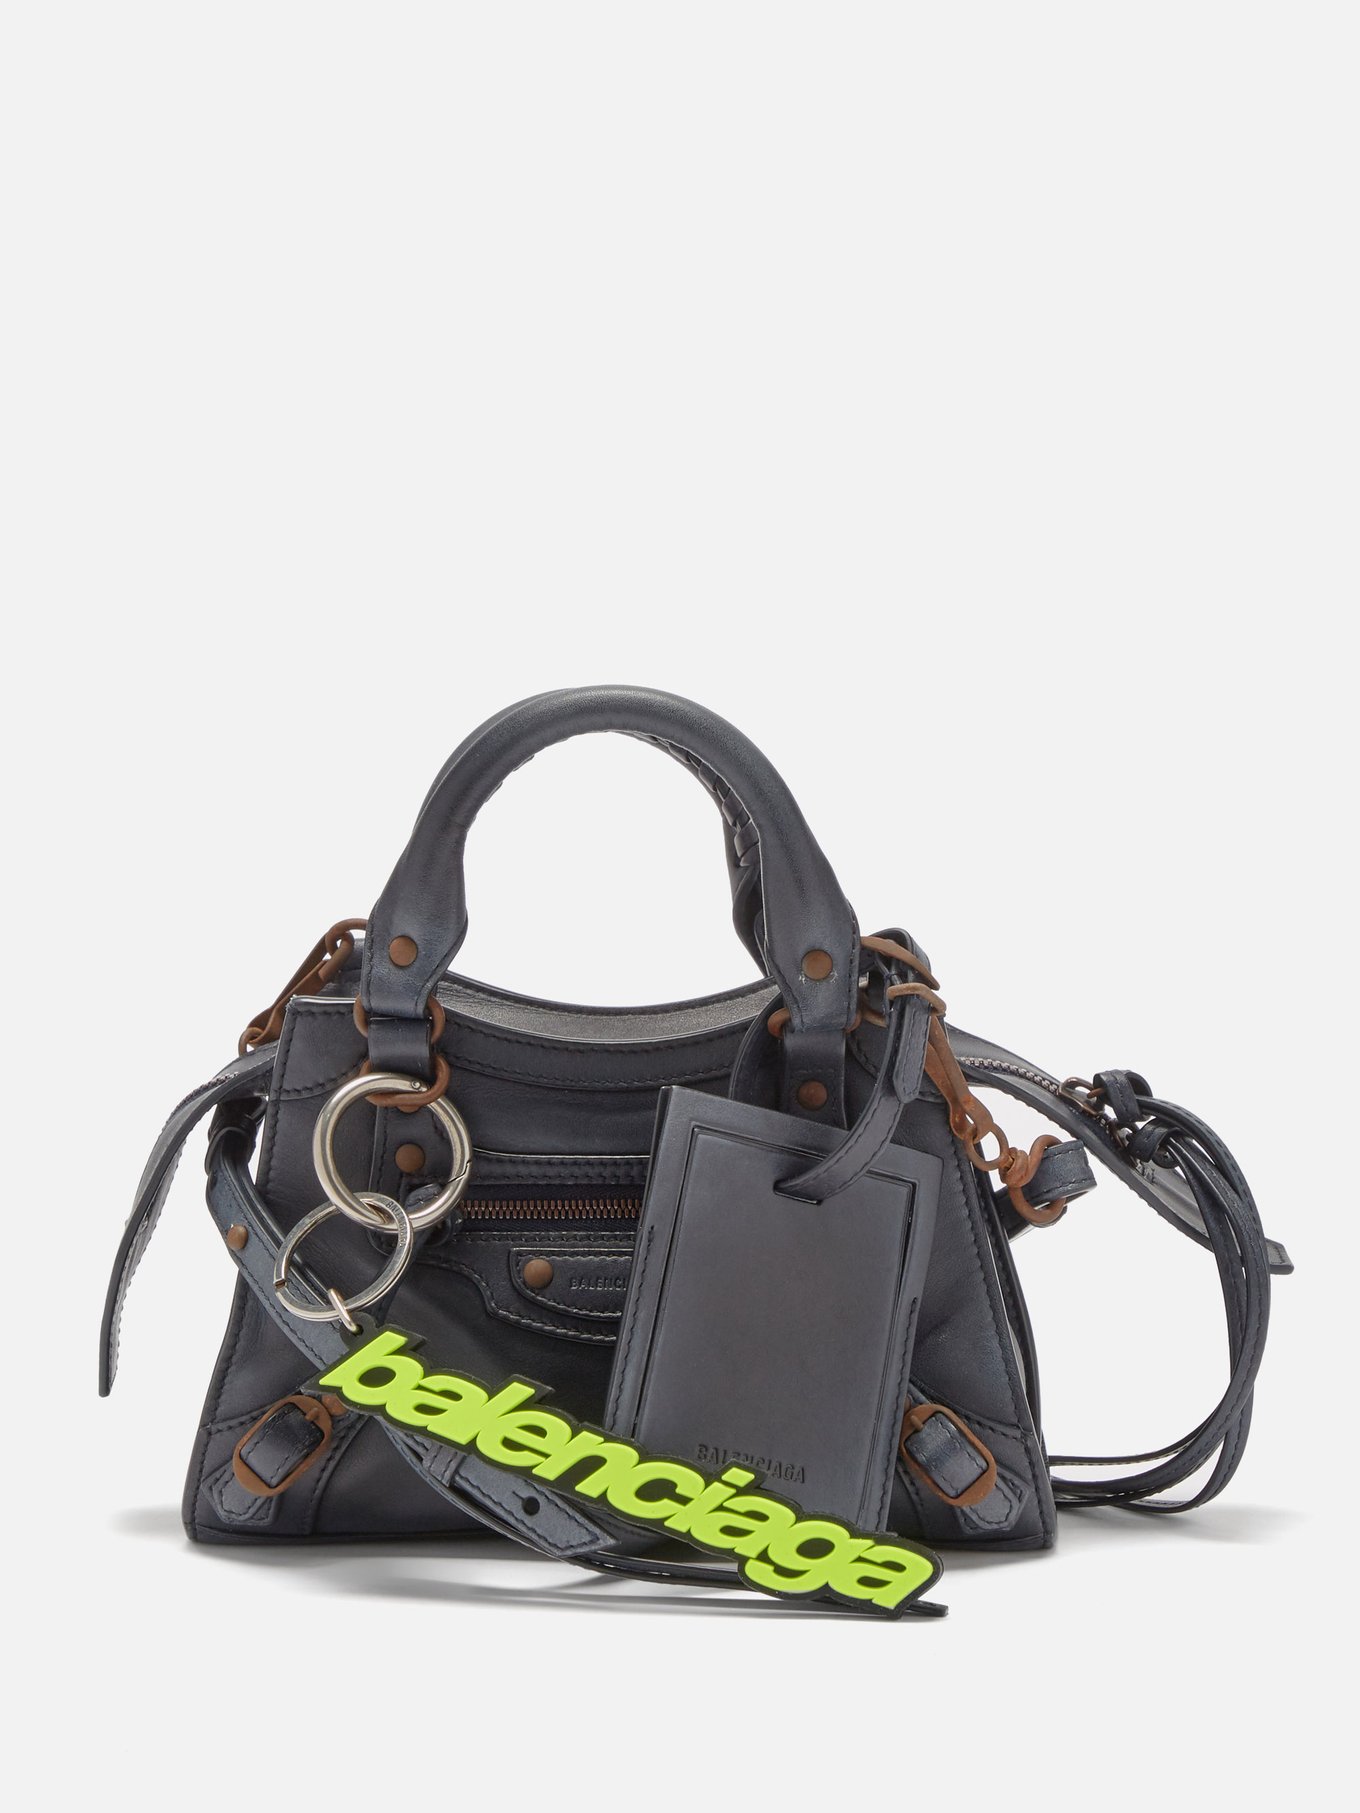 Neo Classic City mini leather bag | Balenciaga